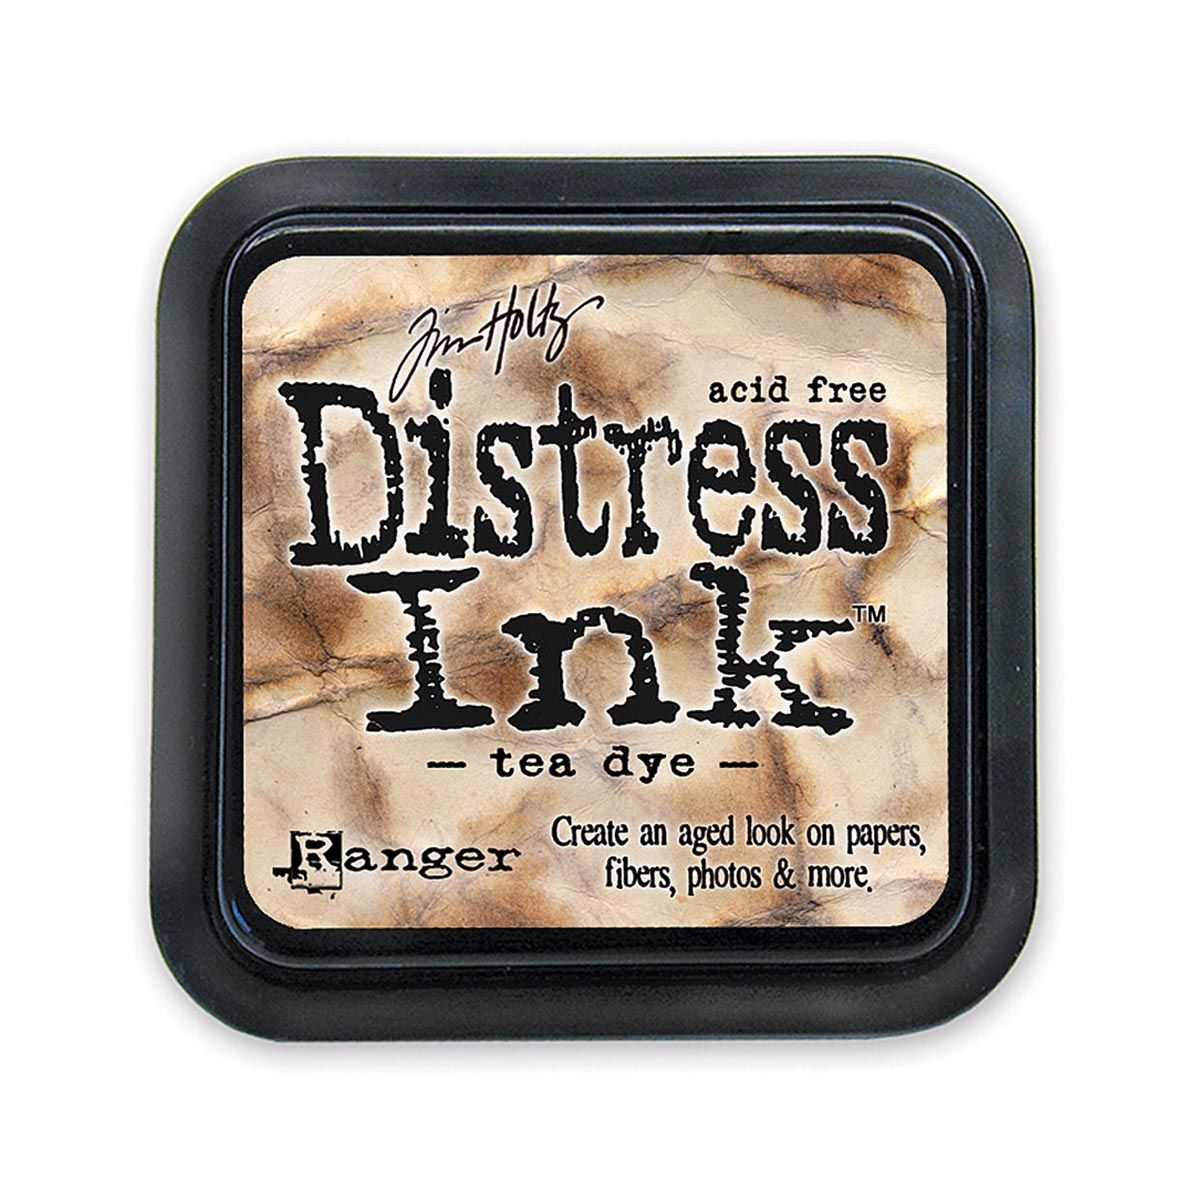 Tim Holtz Mini Distress Ink Pad Tea Dye 1x1 inch